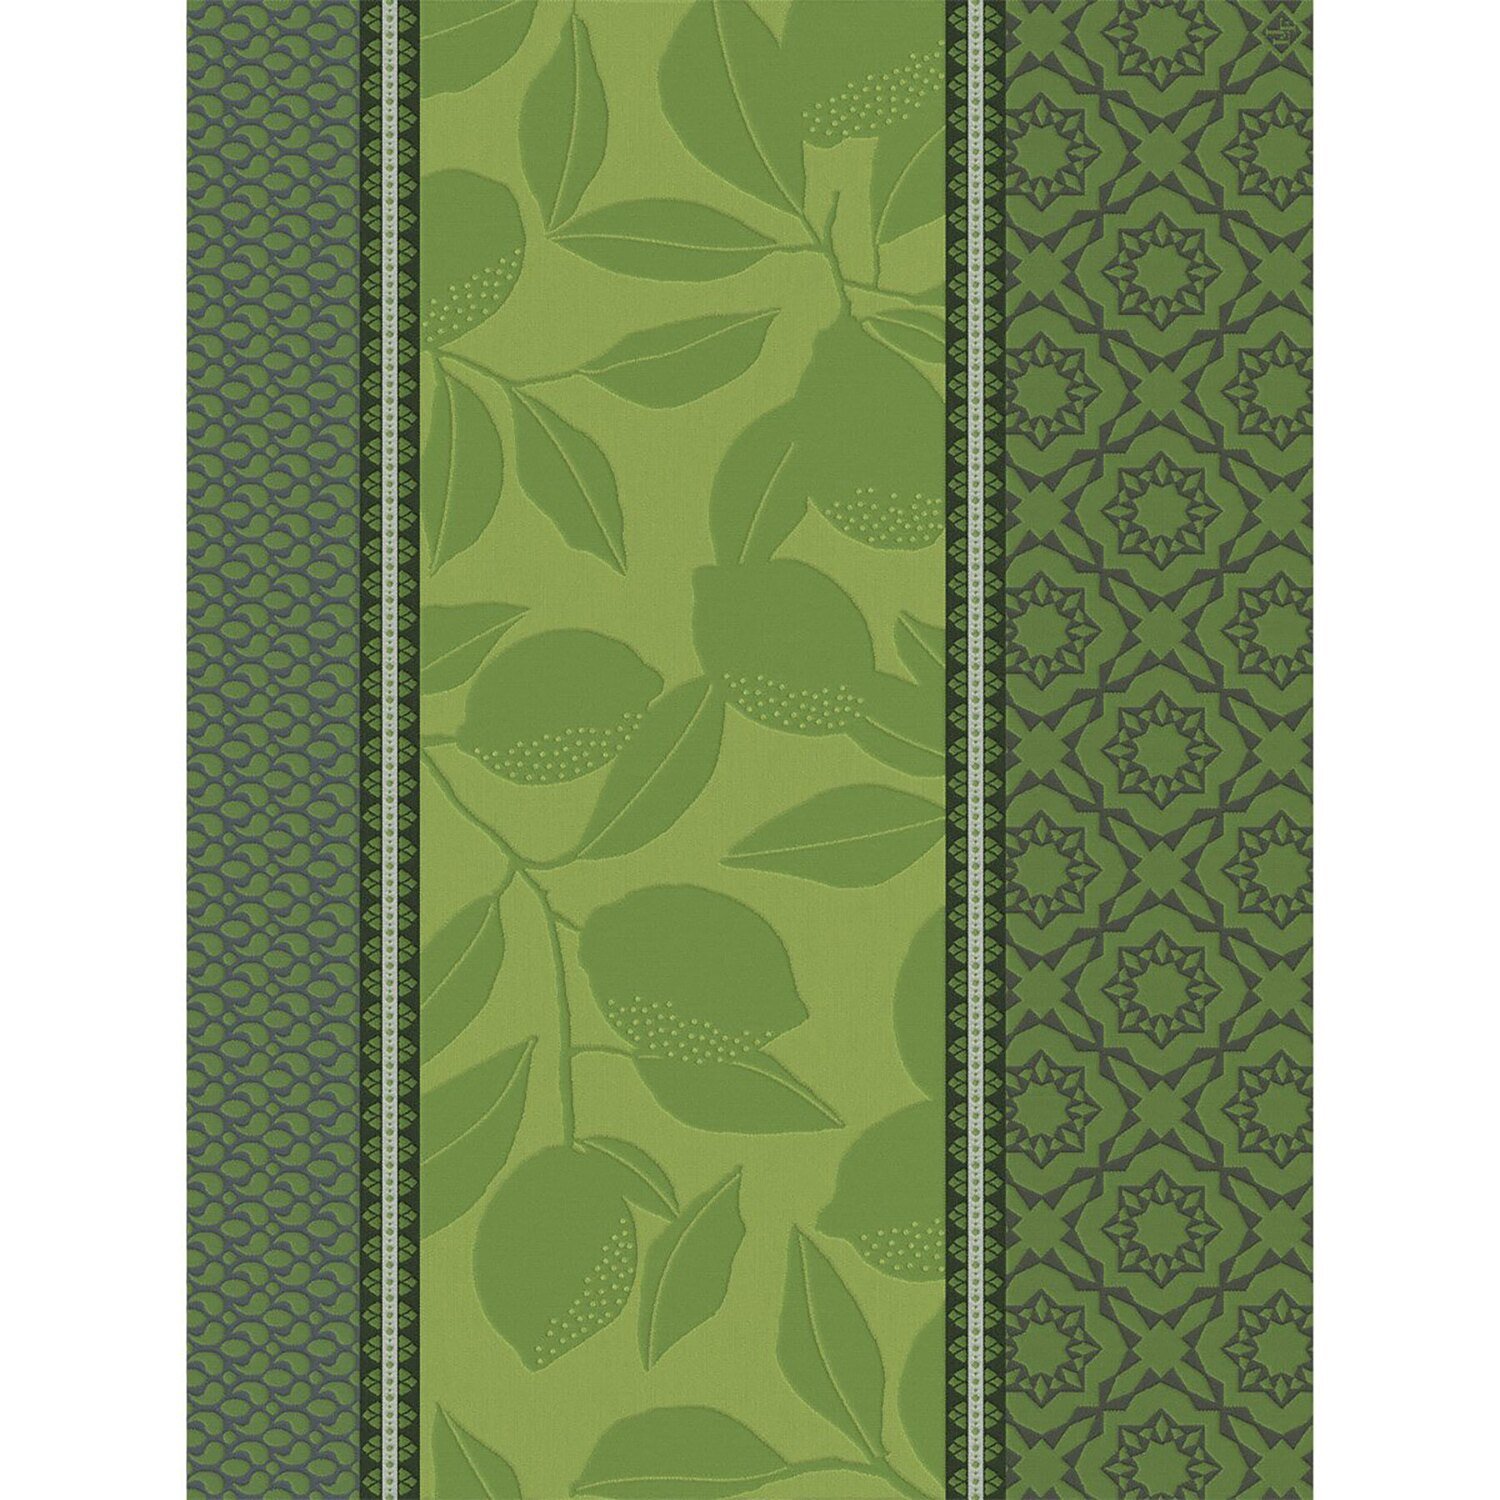 Le Jacquard Francais Tea Towel Sous Citronnniers Green 100% Coton 26836 Set of 4